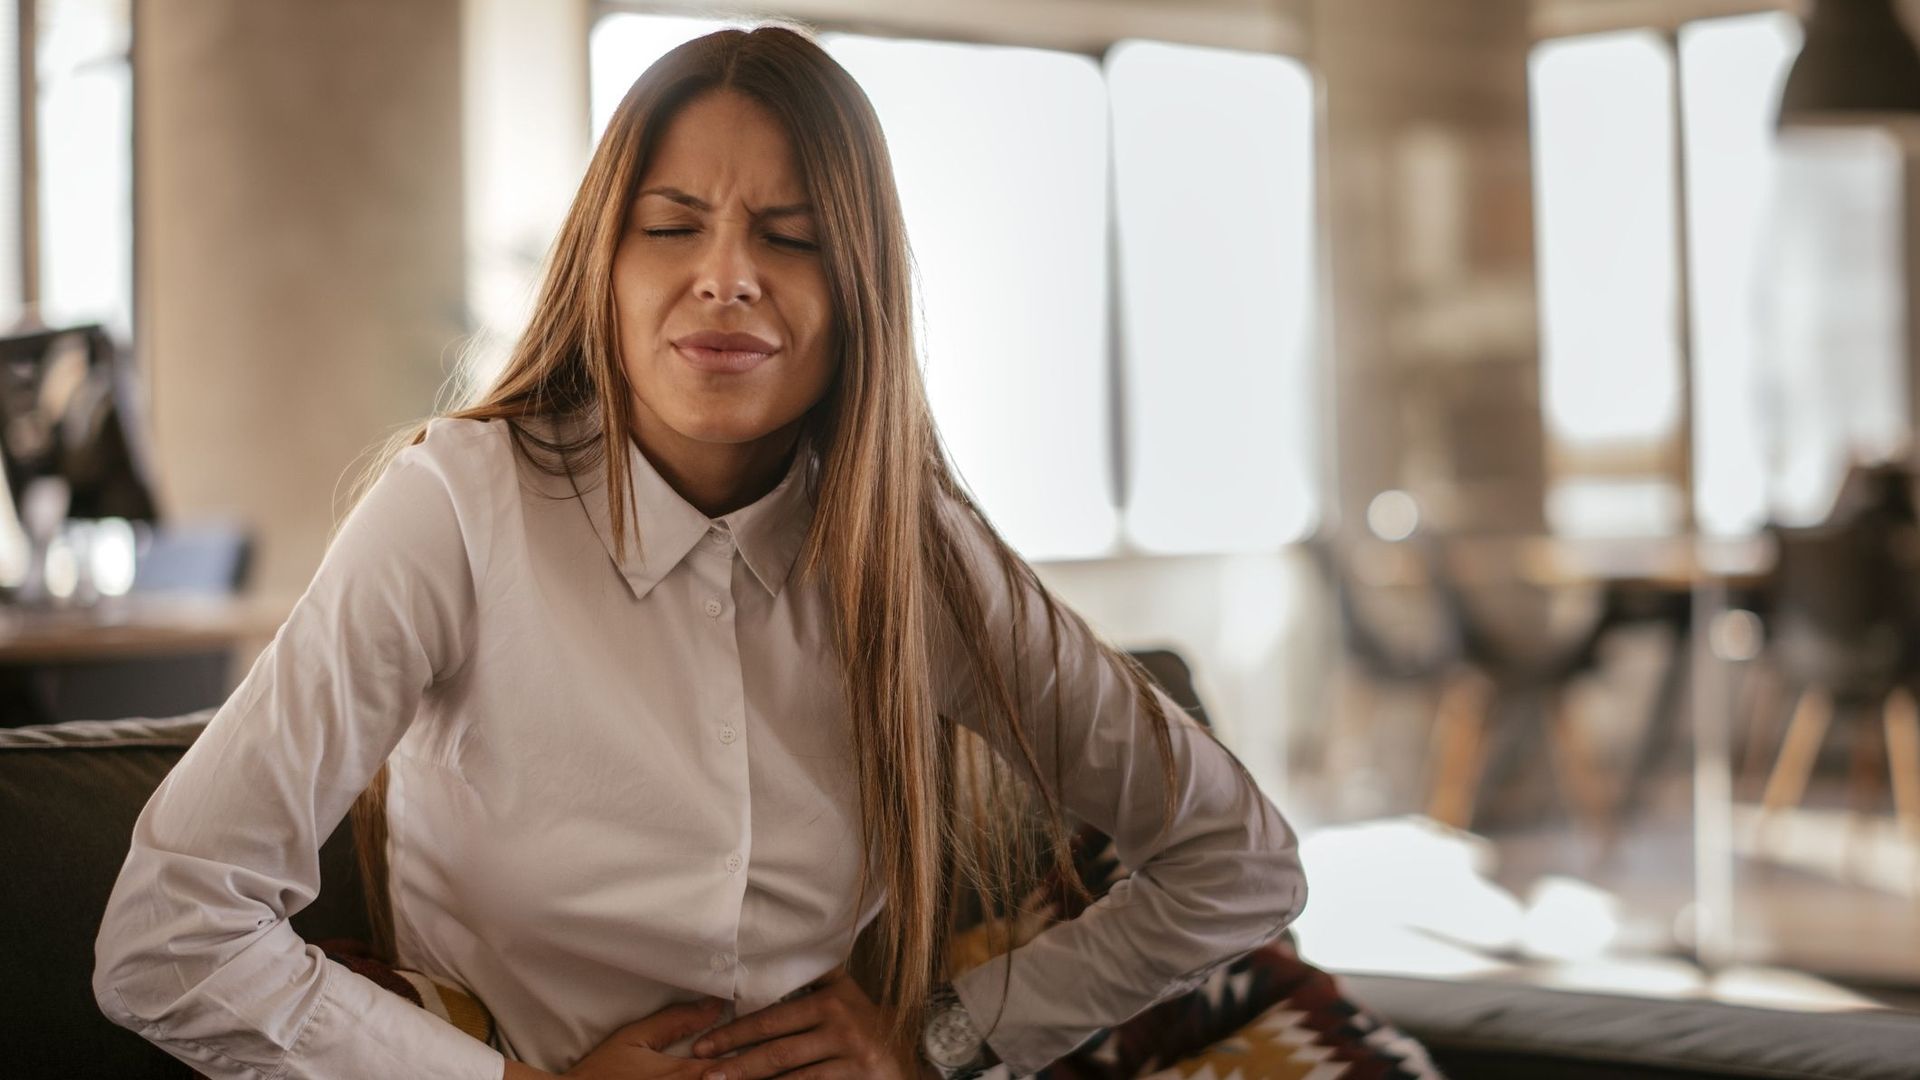 Règles douloureuses au travail : un tabou persistant qui pousse certaines femmes à mentir.